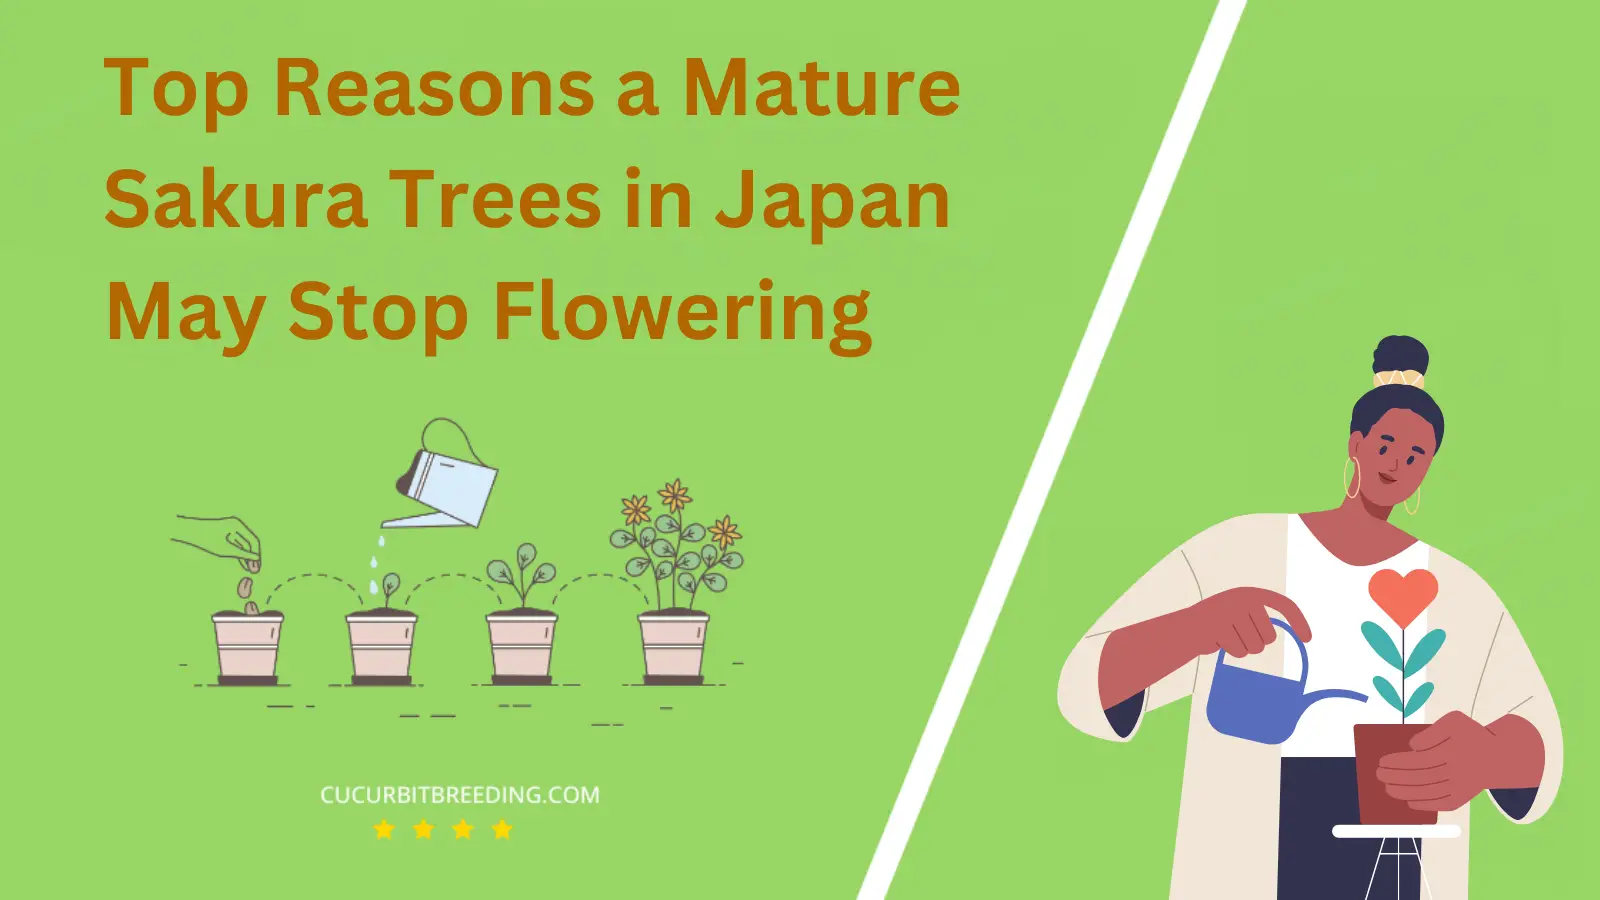 Top Reasons a Mature Sakura Trees in Japan May Stop Flowering